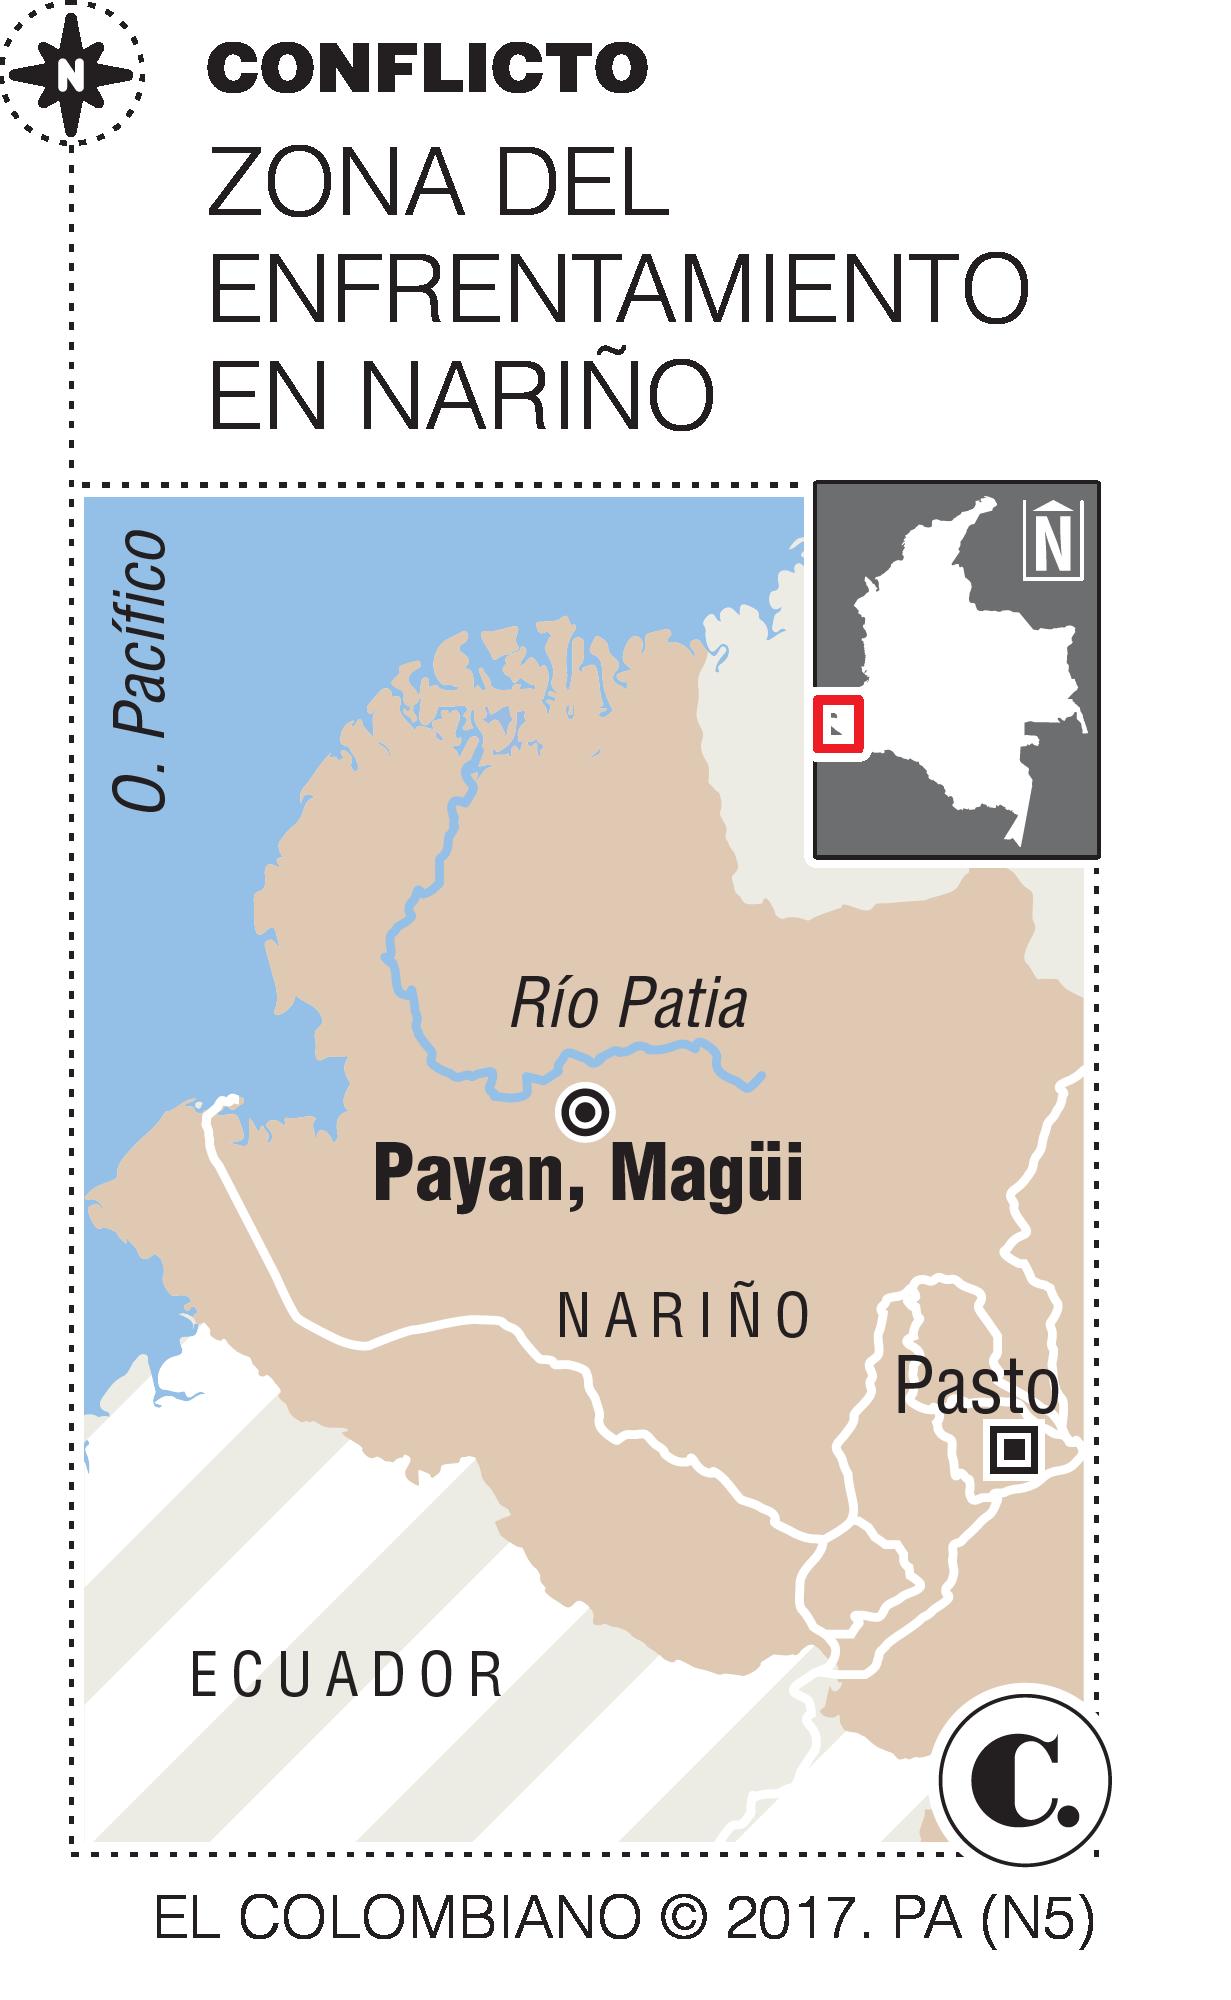 Choque entre grupos ilegales ocasiona masacre en Nariño